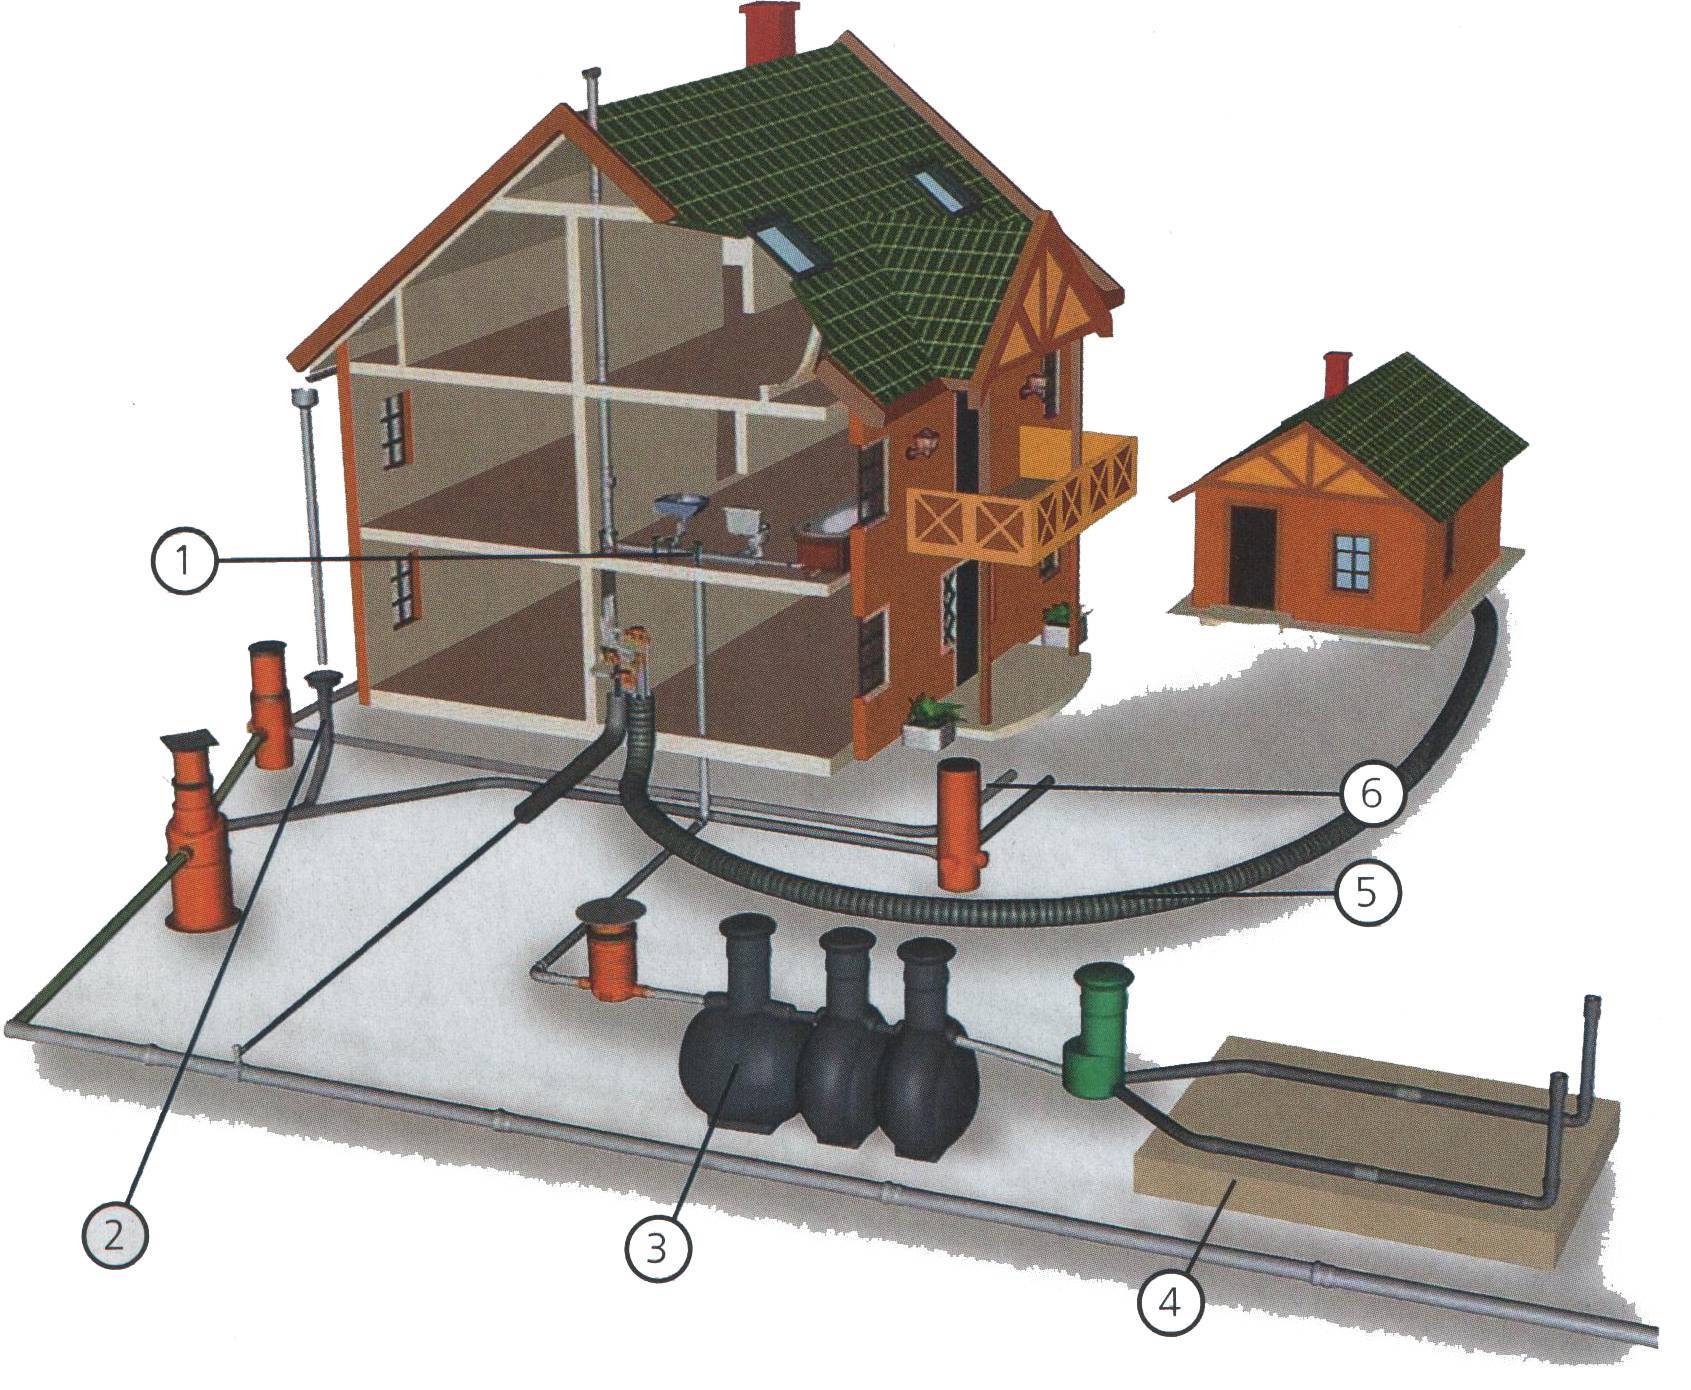 Ливневая канализация: технология монтажа